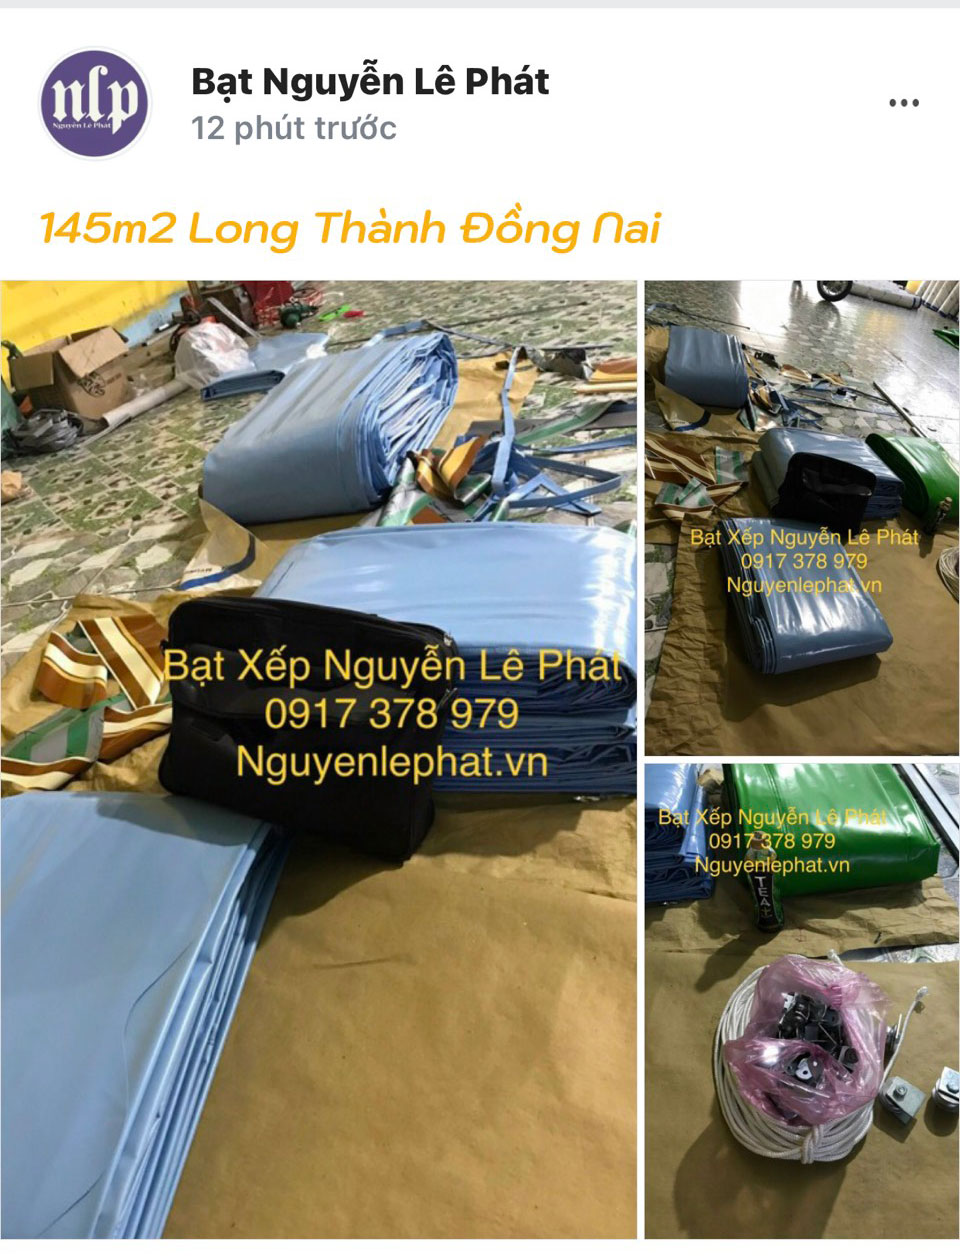 Báo giá may ép bạt mái hiên mái xếp bạt kéo di động che nắng mưa ngoài trời tại Đà Nẵng